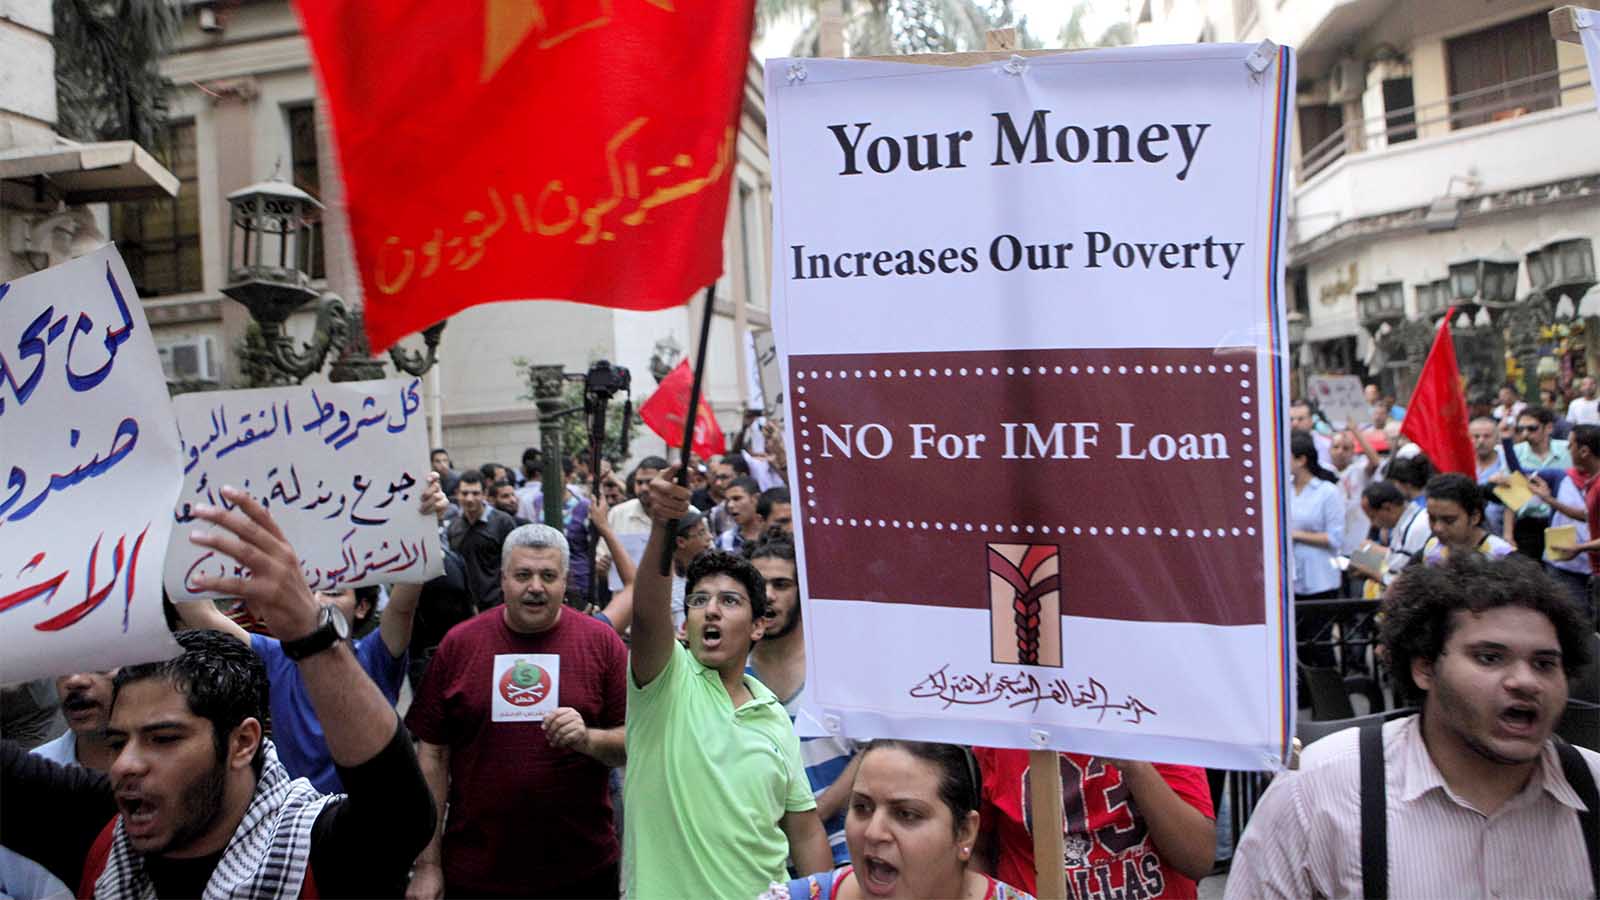 אזרחים מצריים מפגינים בקהיר נגד קרן המטבע ומדיניות ההלוואות שלה, לאחר שמצרים ביקשה מהקרן הלוואה באוגוסט 2012 (AP Photo/Amr Nabil)